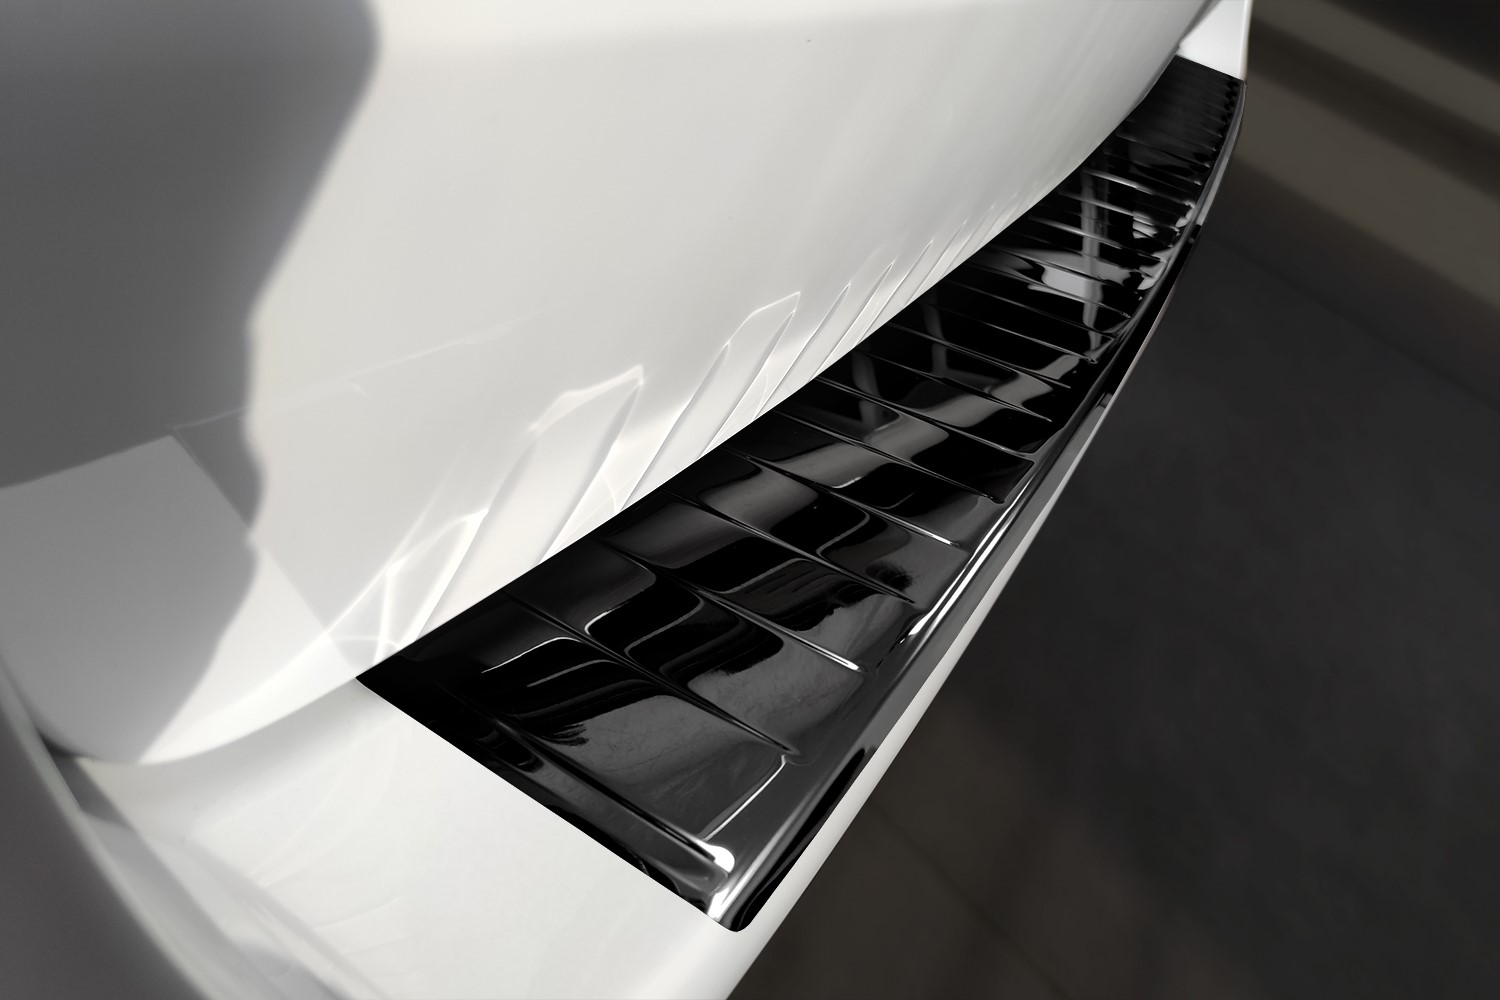 Ladekantenschutz für Mercedes V Klasse Vito W447 2014-2022 schwarz geb –  E-Parts24